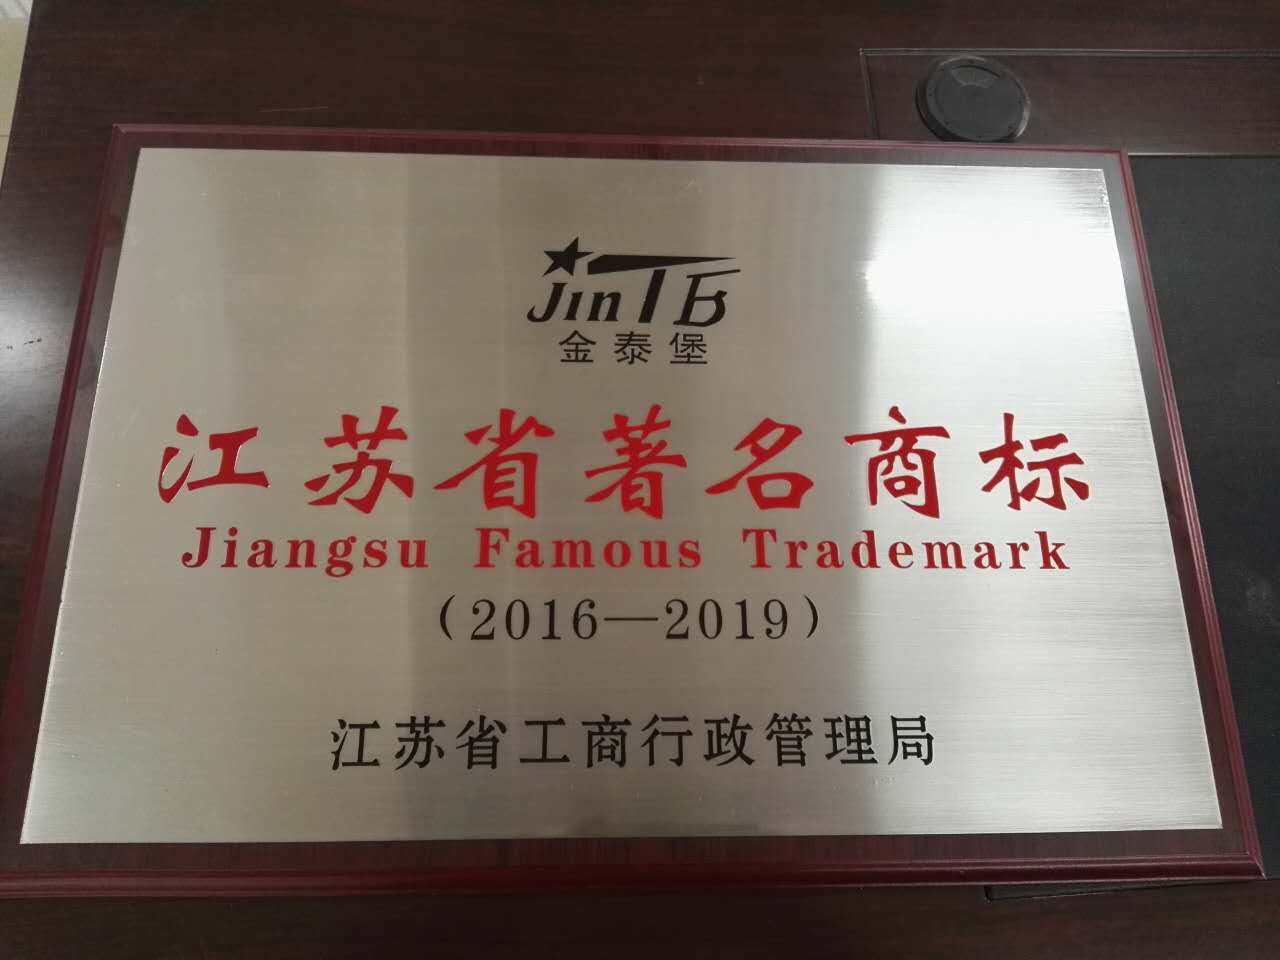 热烈祝贺金泰堡荣获“江苏省著名商标”